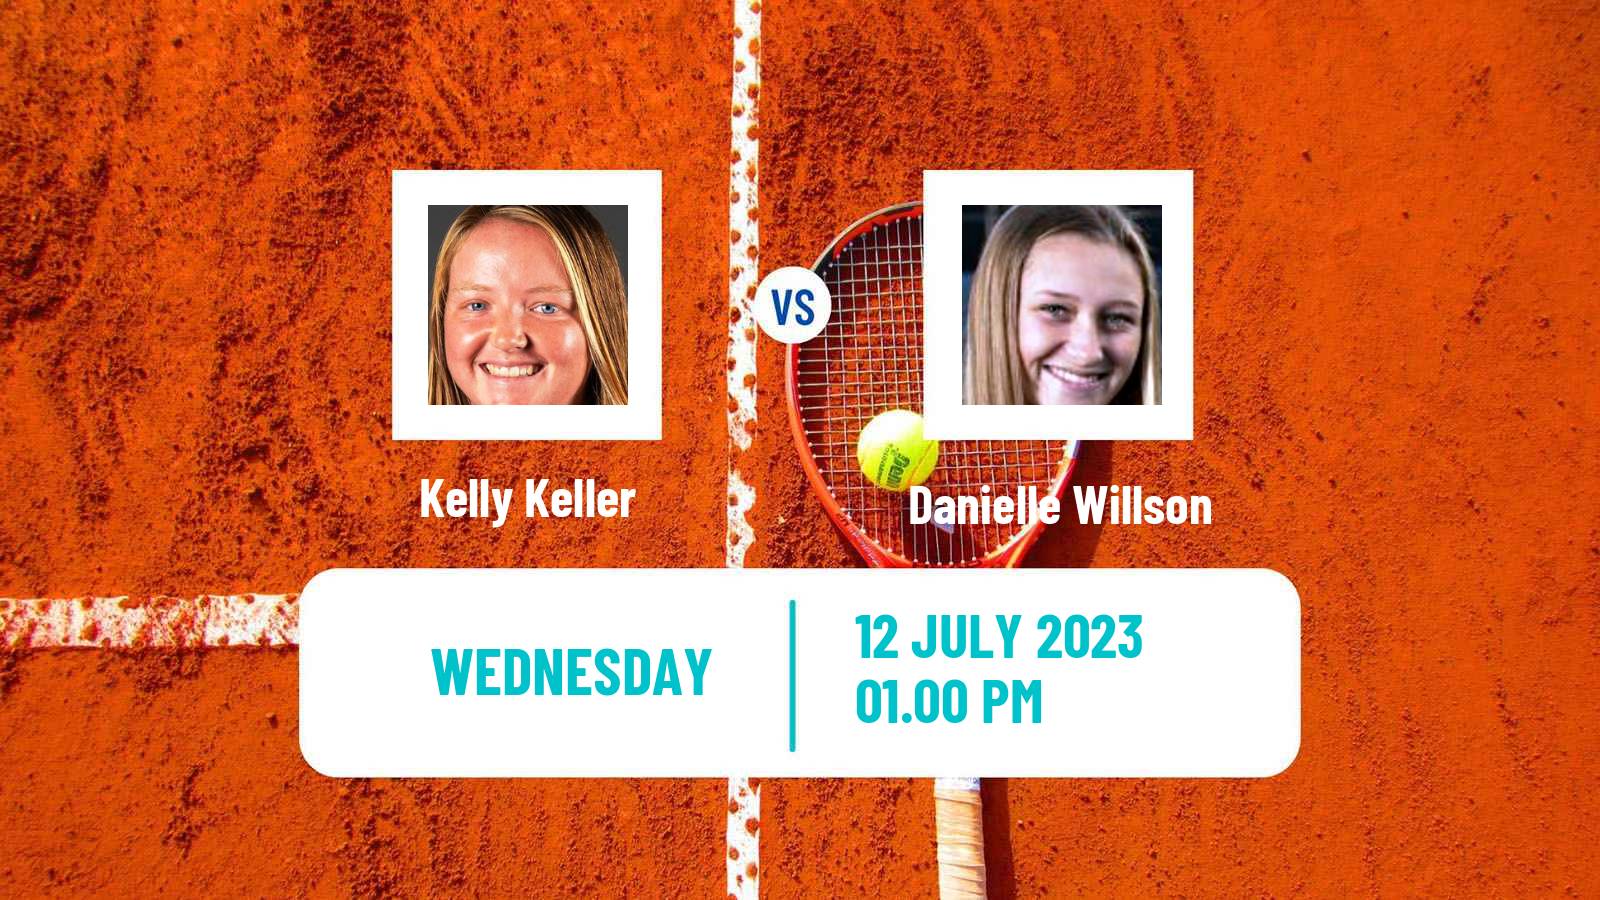 Tennis ITF W15 Lakewood Ca 2 Women Kelly Keller - Danielle Willson